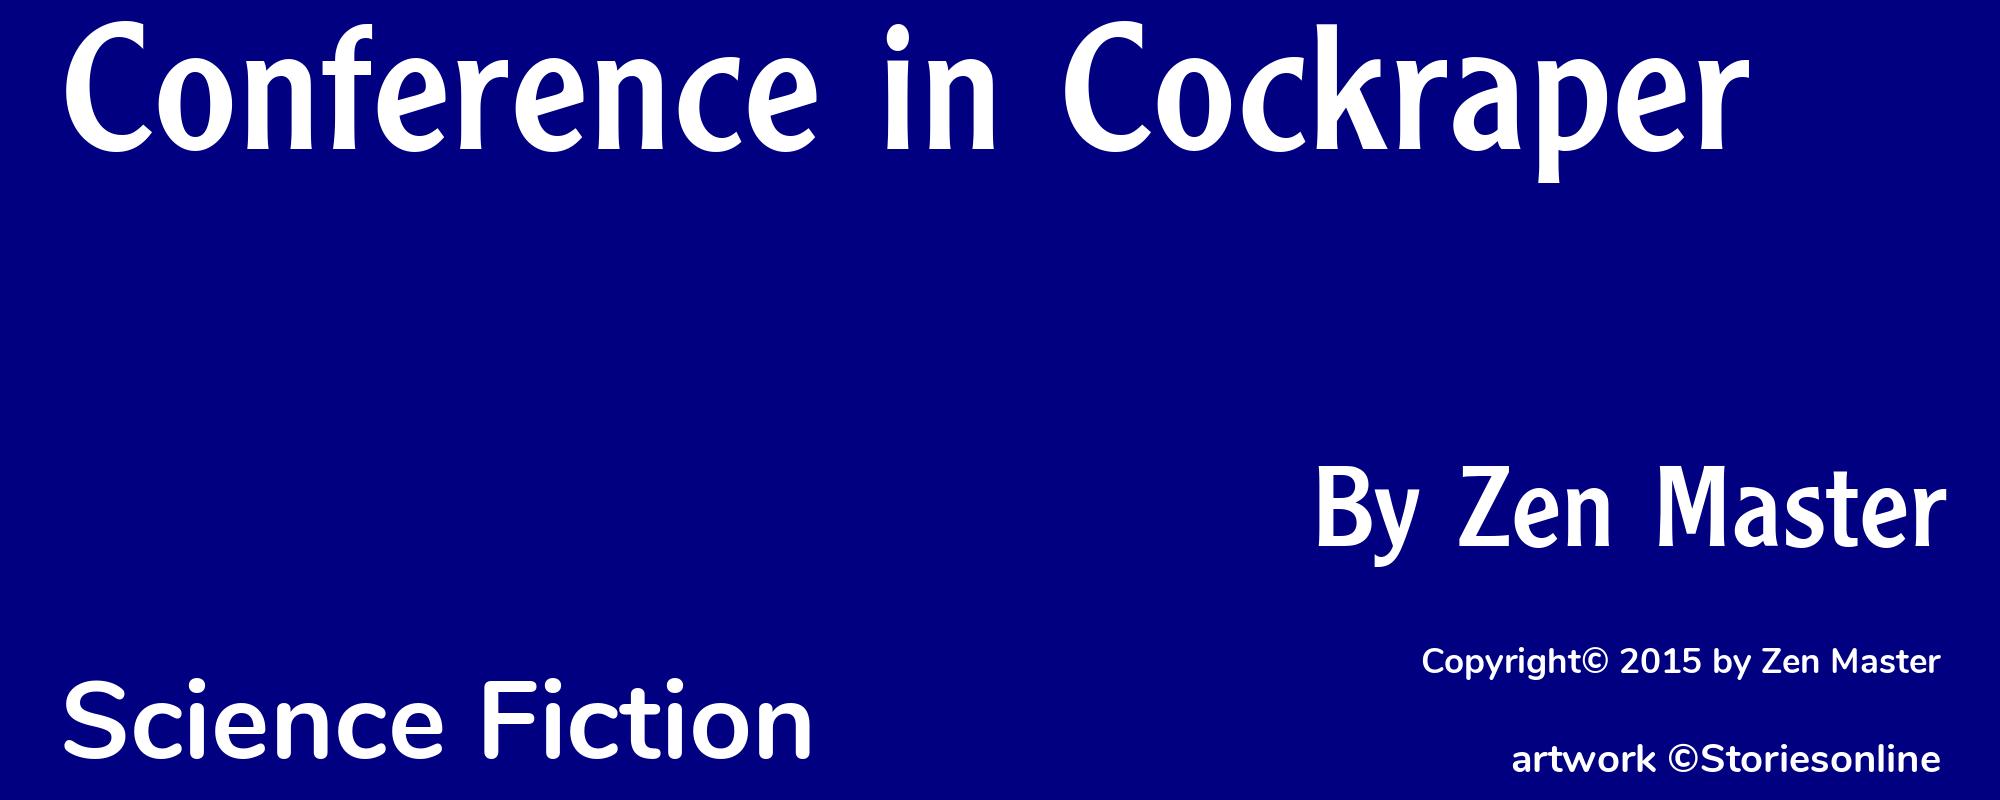 Conference in Cockraper - Cover